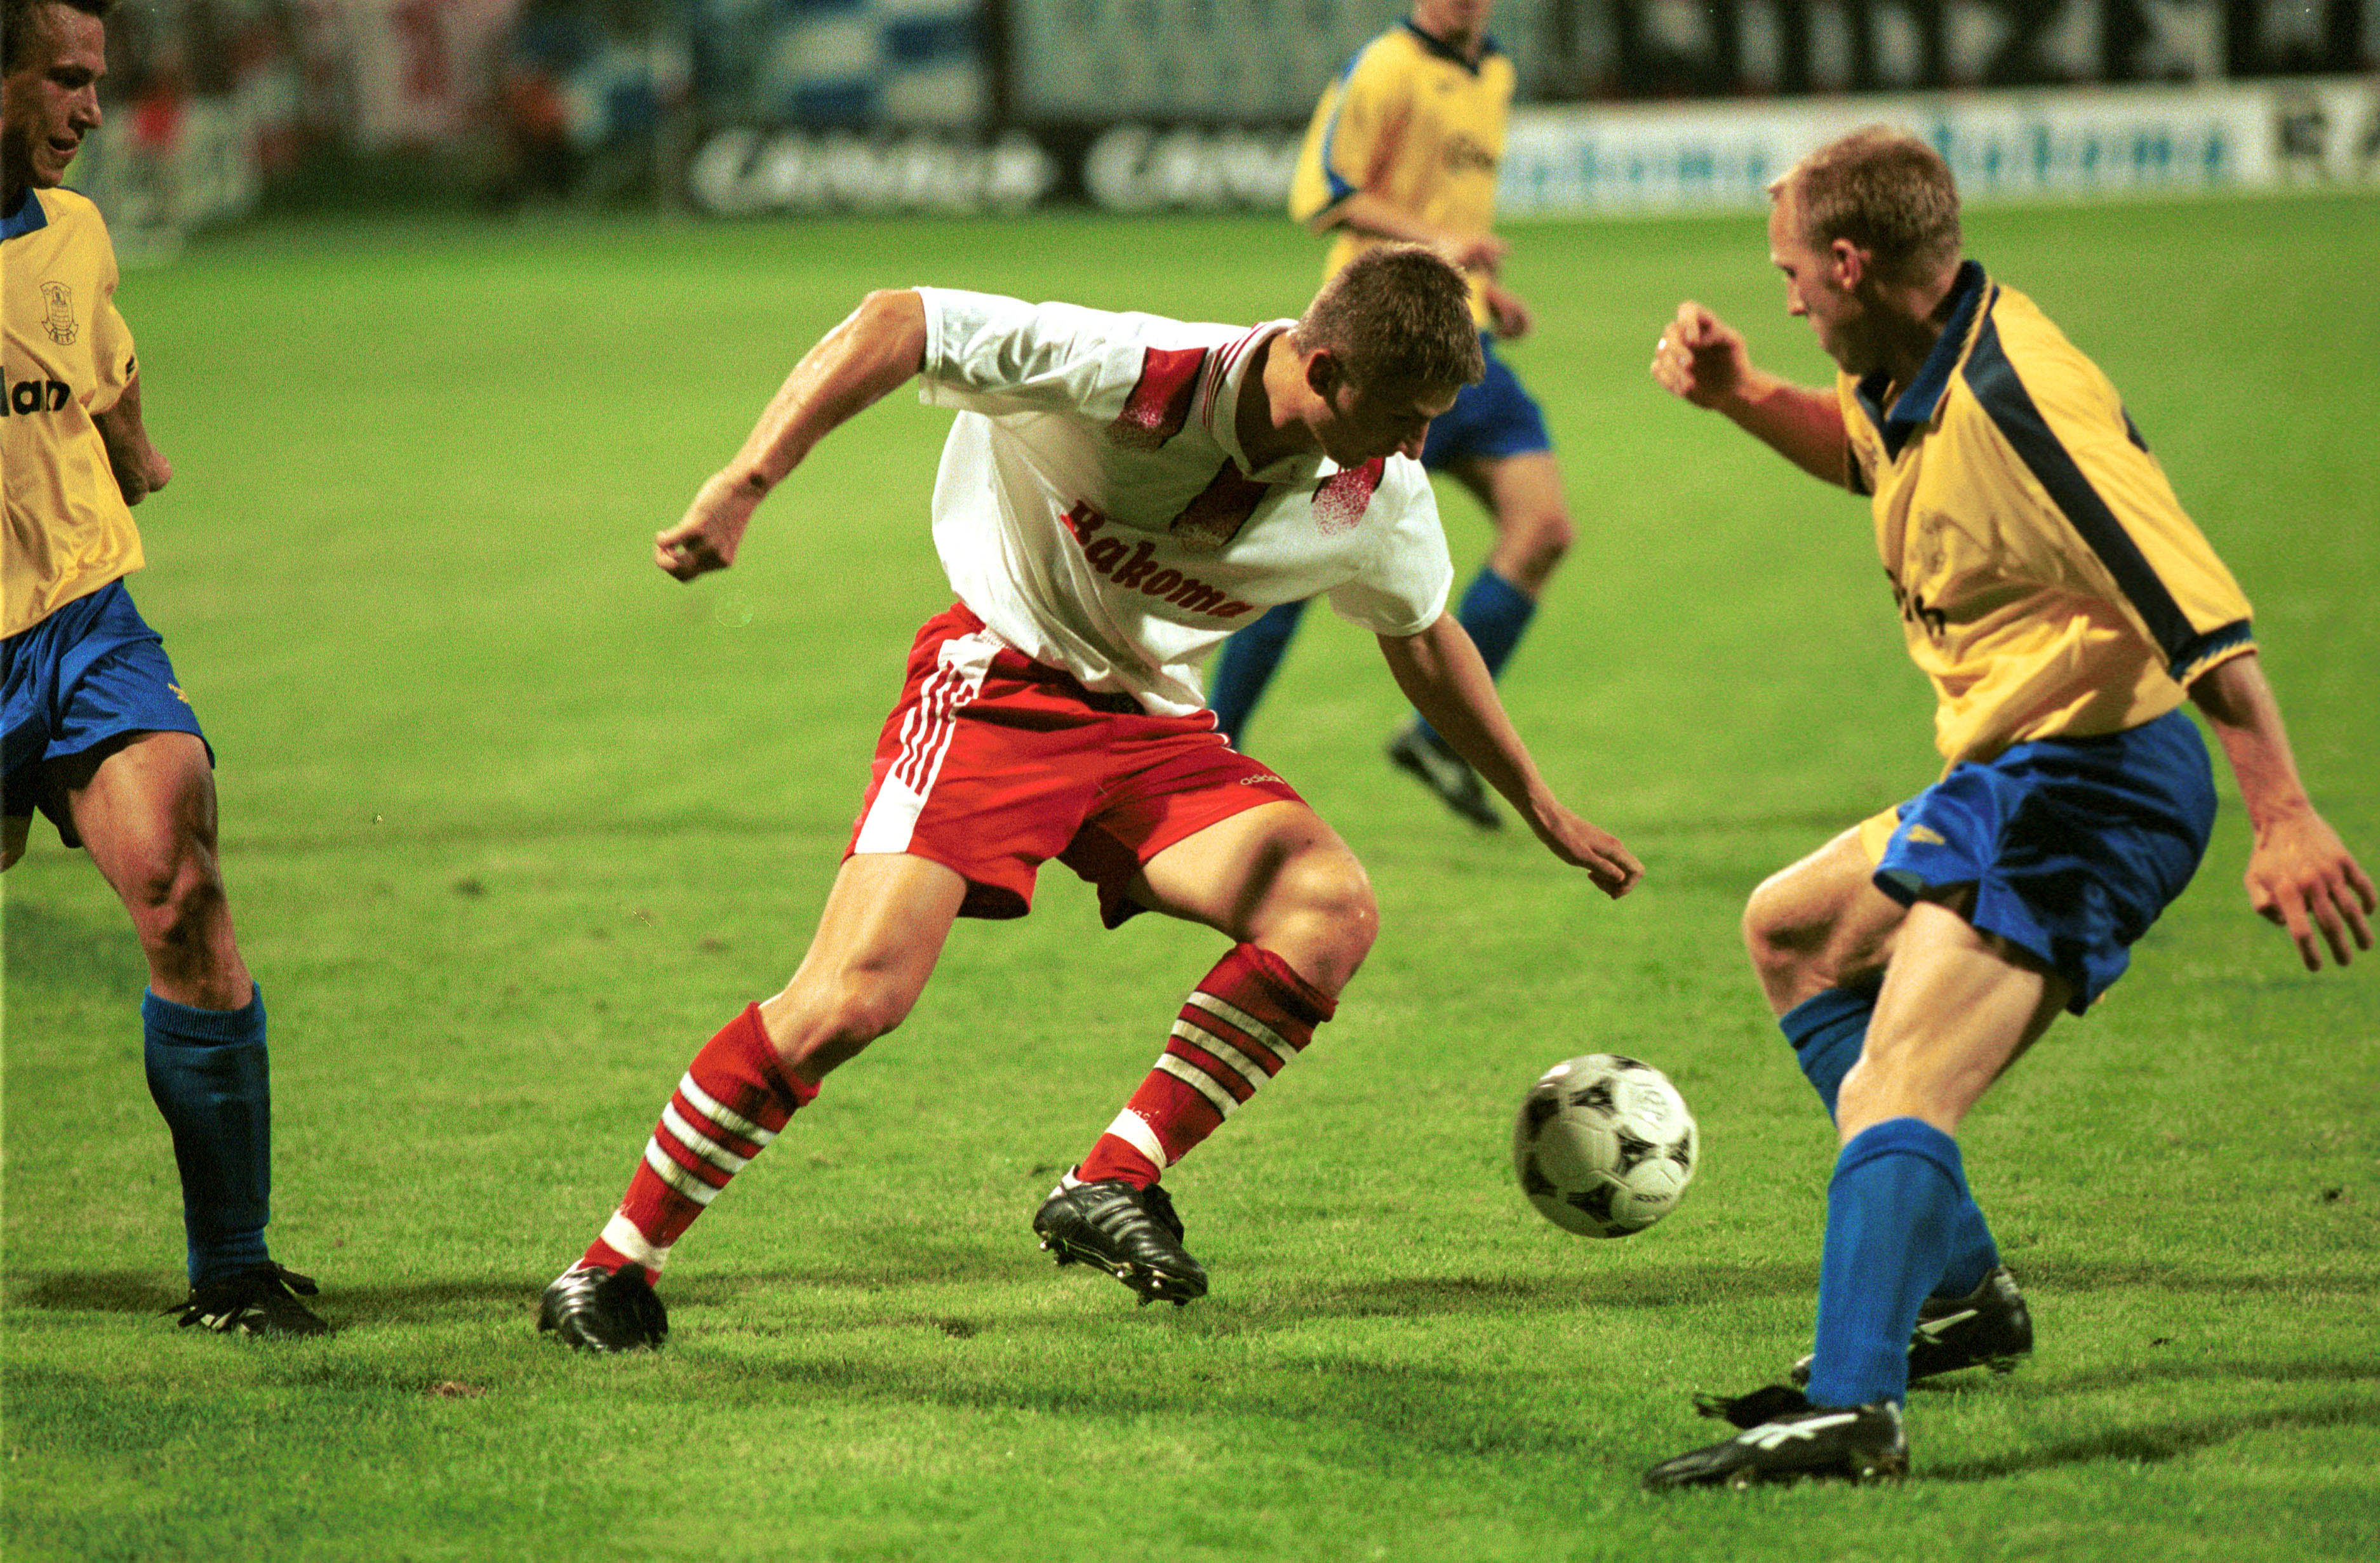 Mecz Widzew - Broendby 1996 Marek Citko